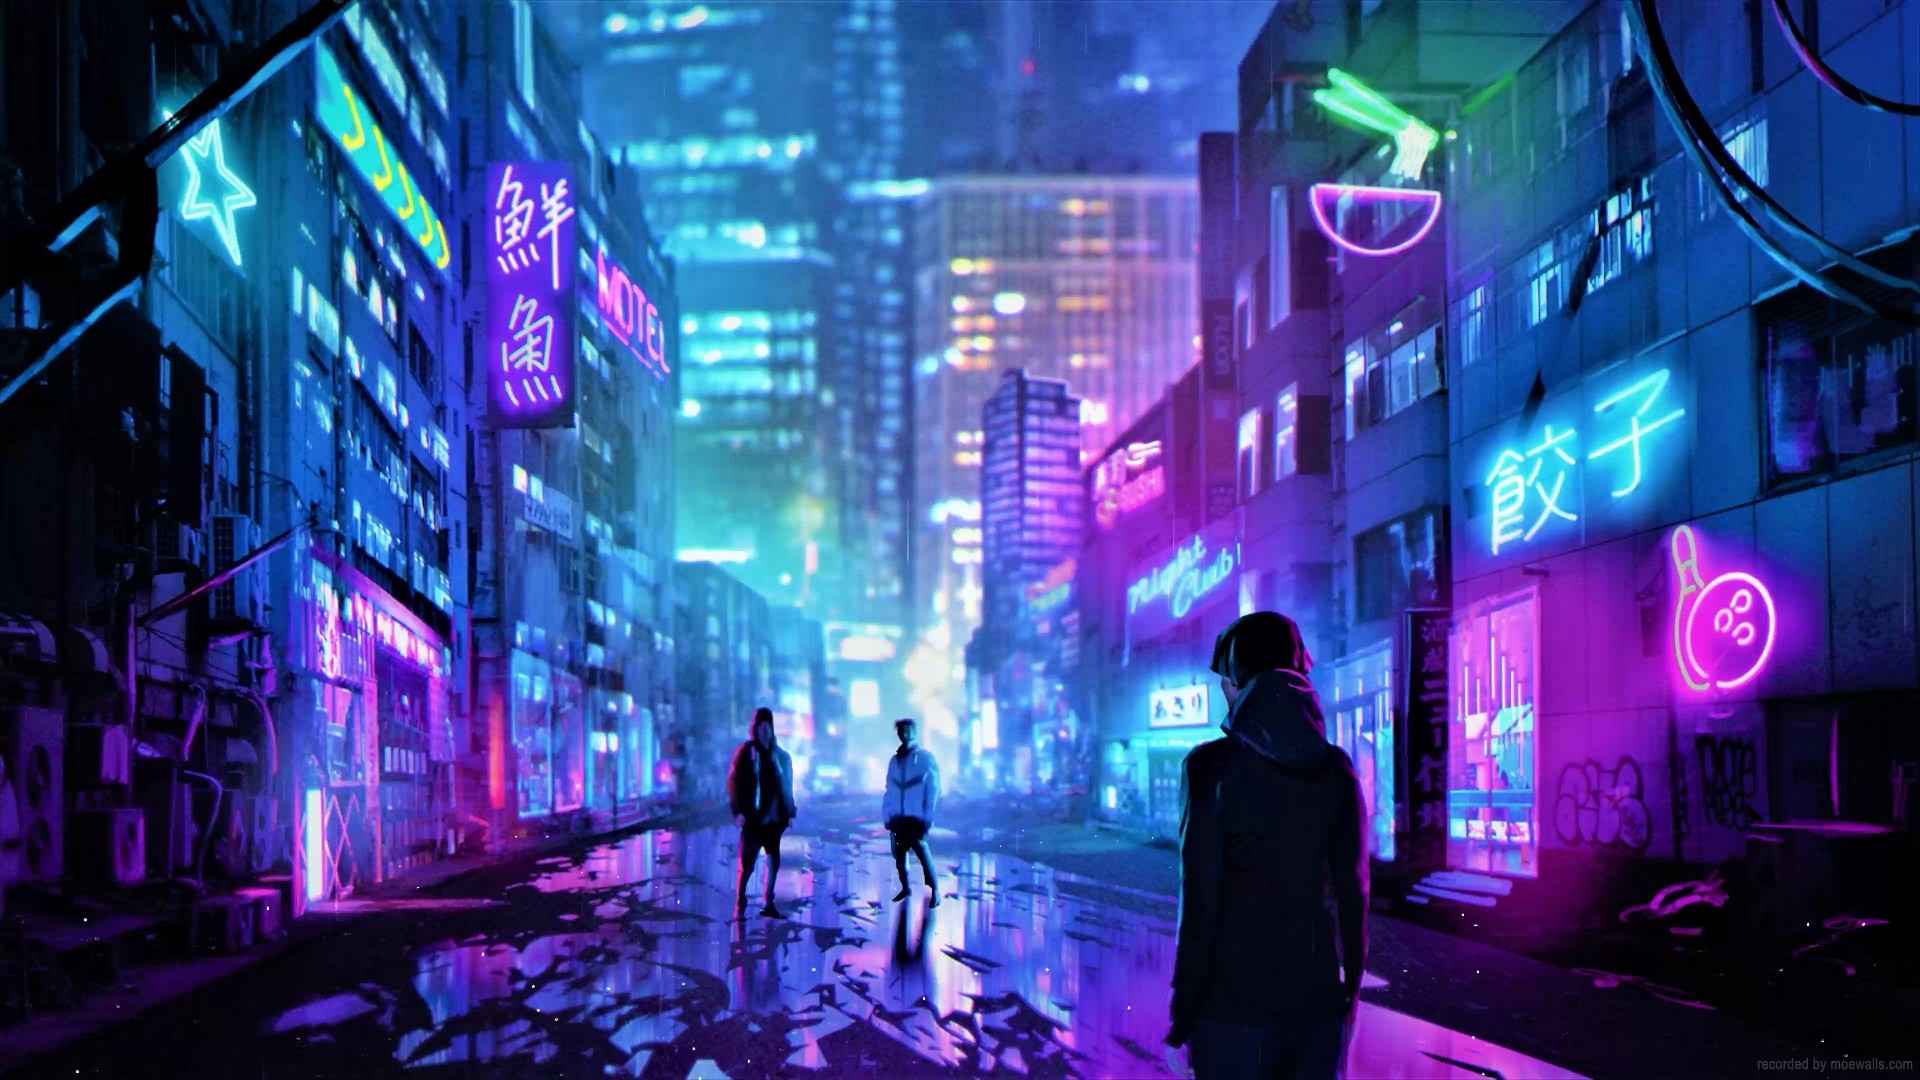 Cyberpunk City Live Wallpaper